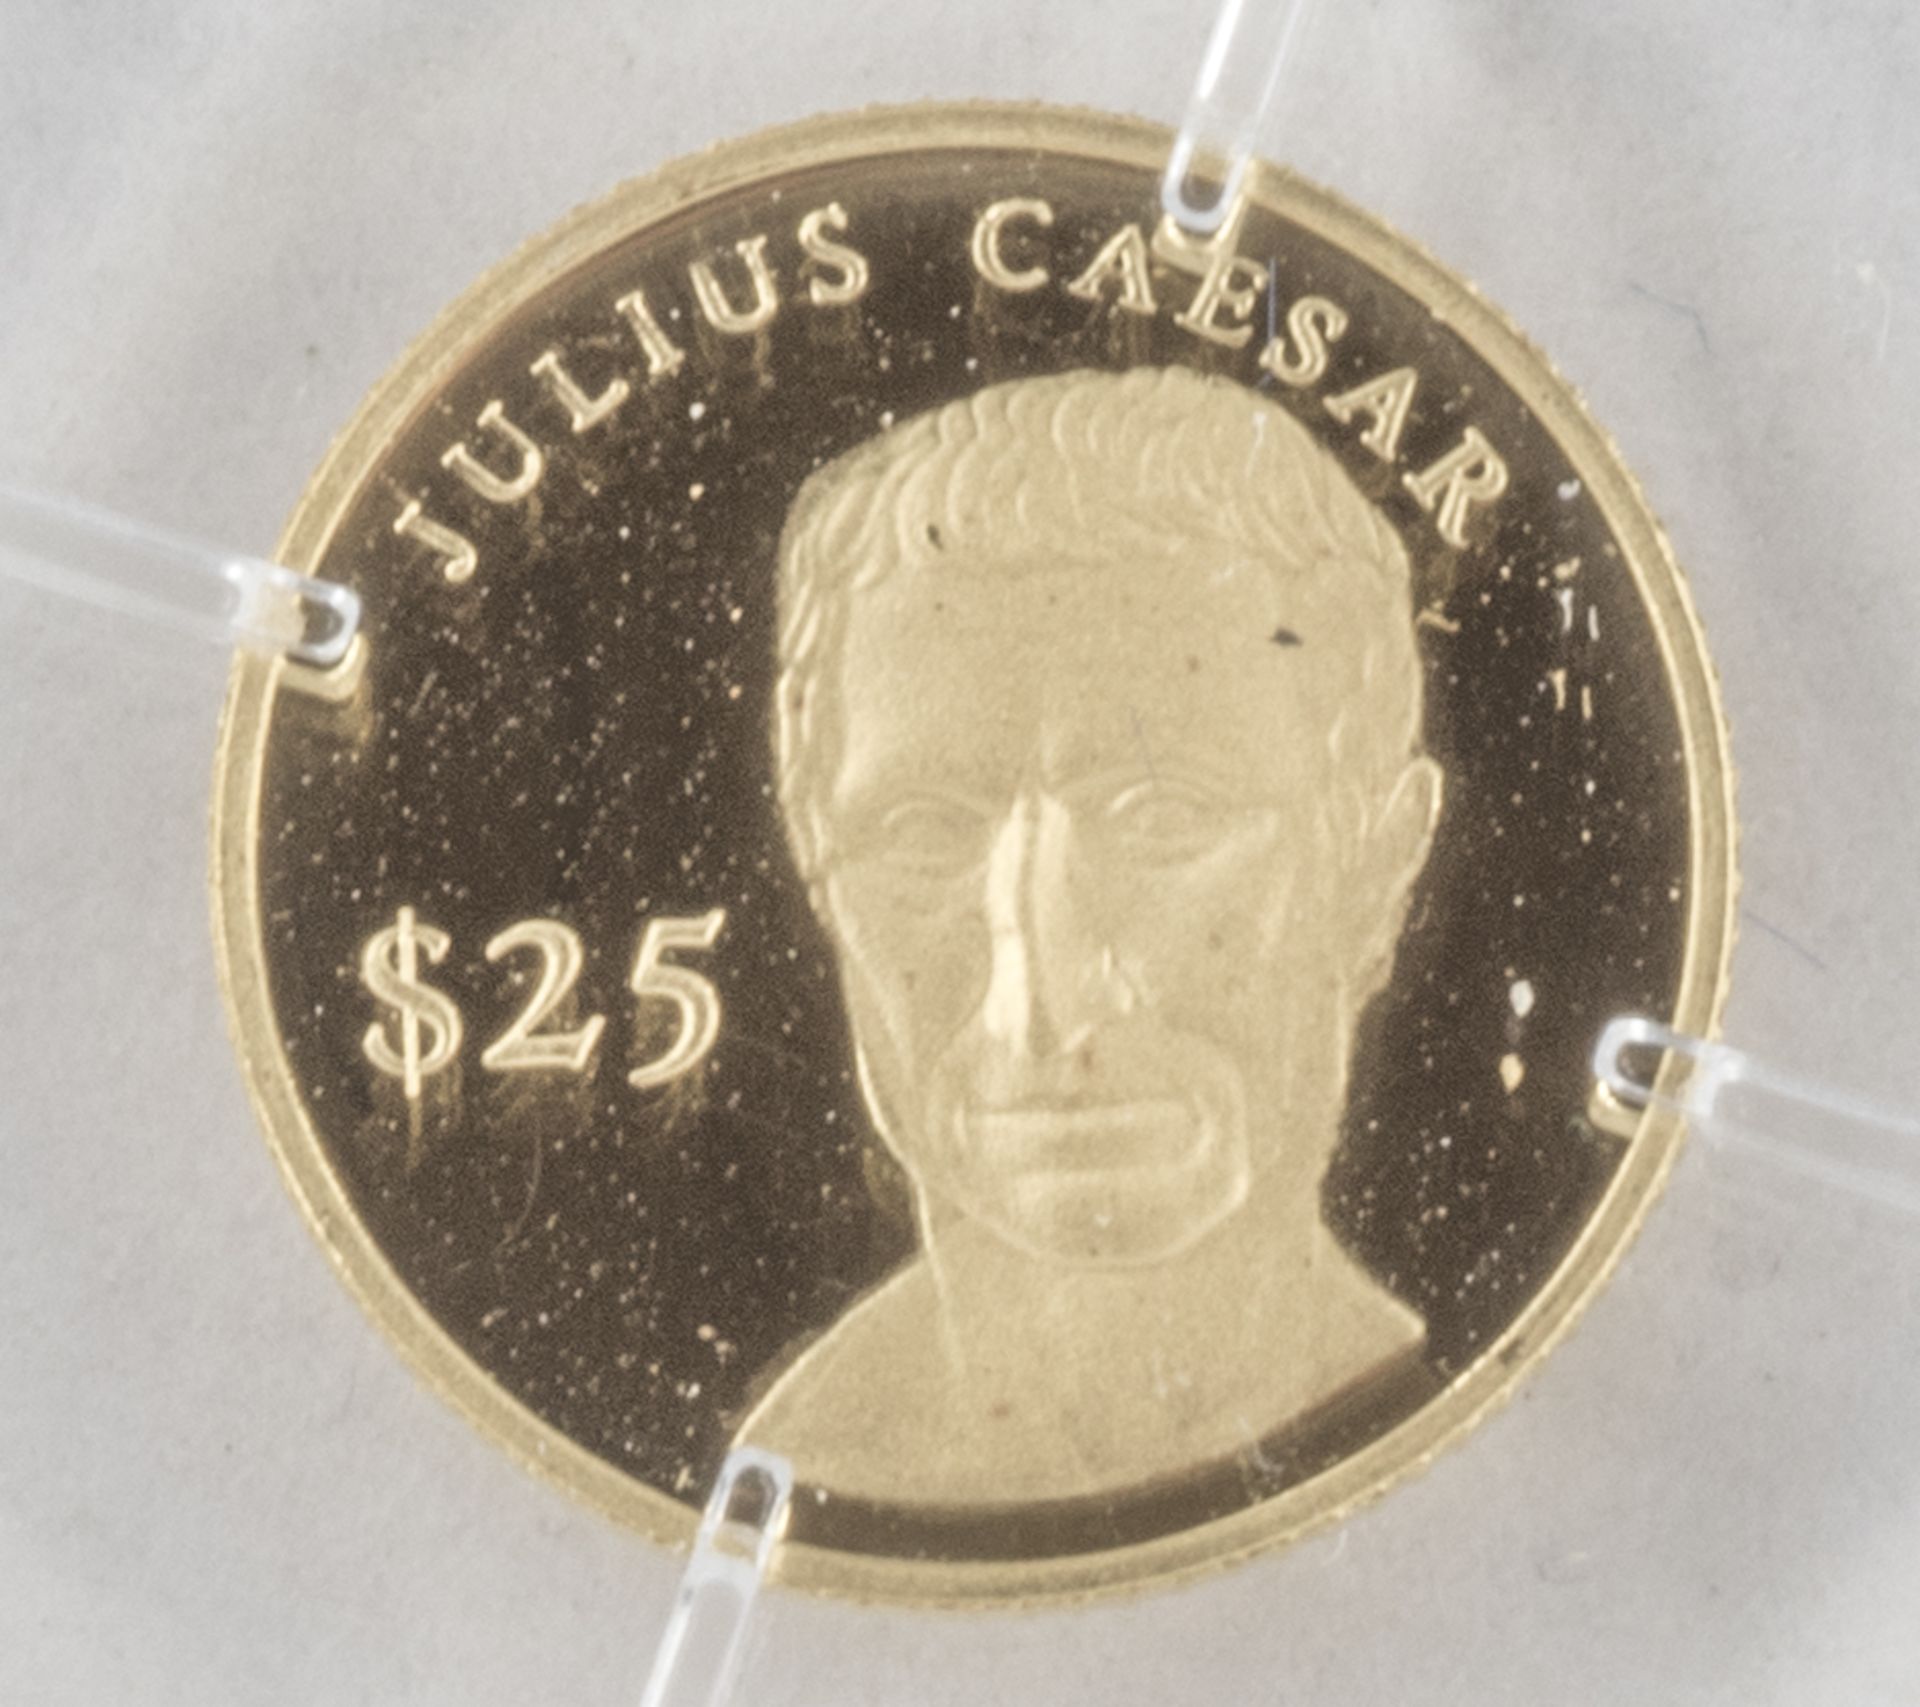 Liberia 2001, 25.- Dollar - Goldmünze "Julius Caesar". Gold 999. Gewicht: 0,73 g. Durchmesser: 11